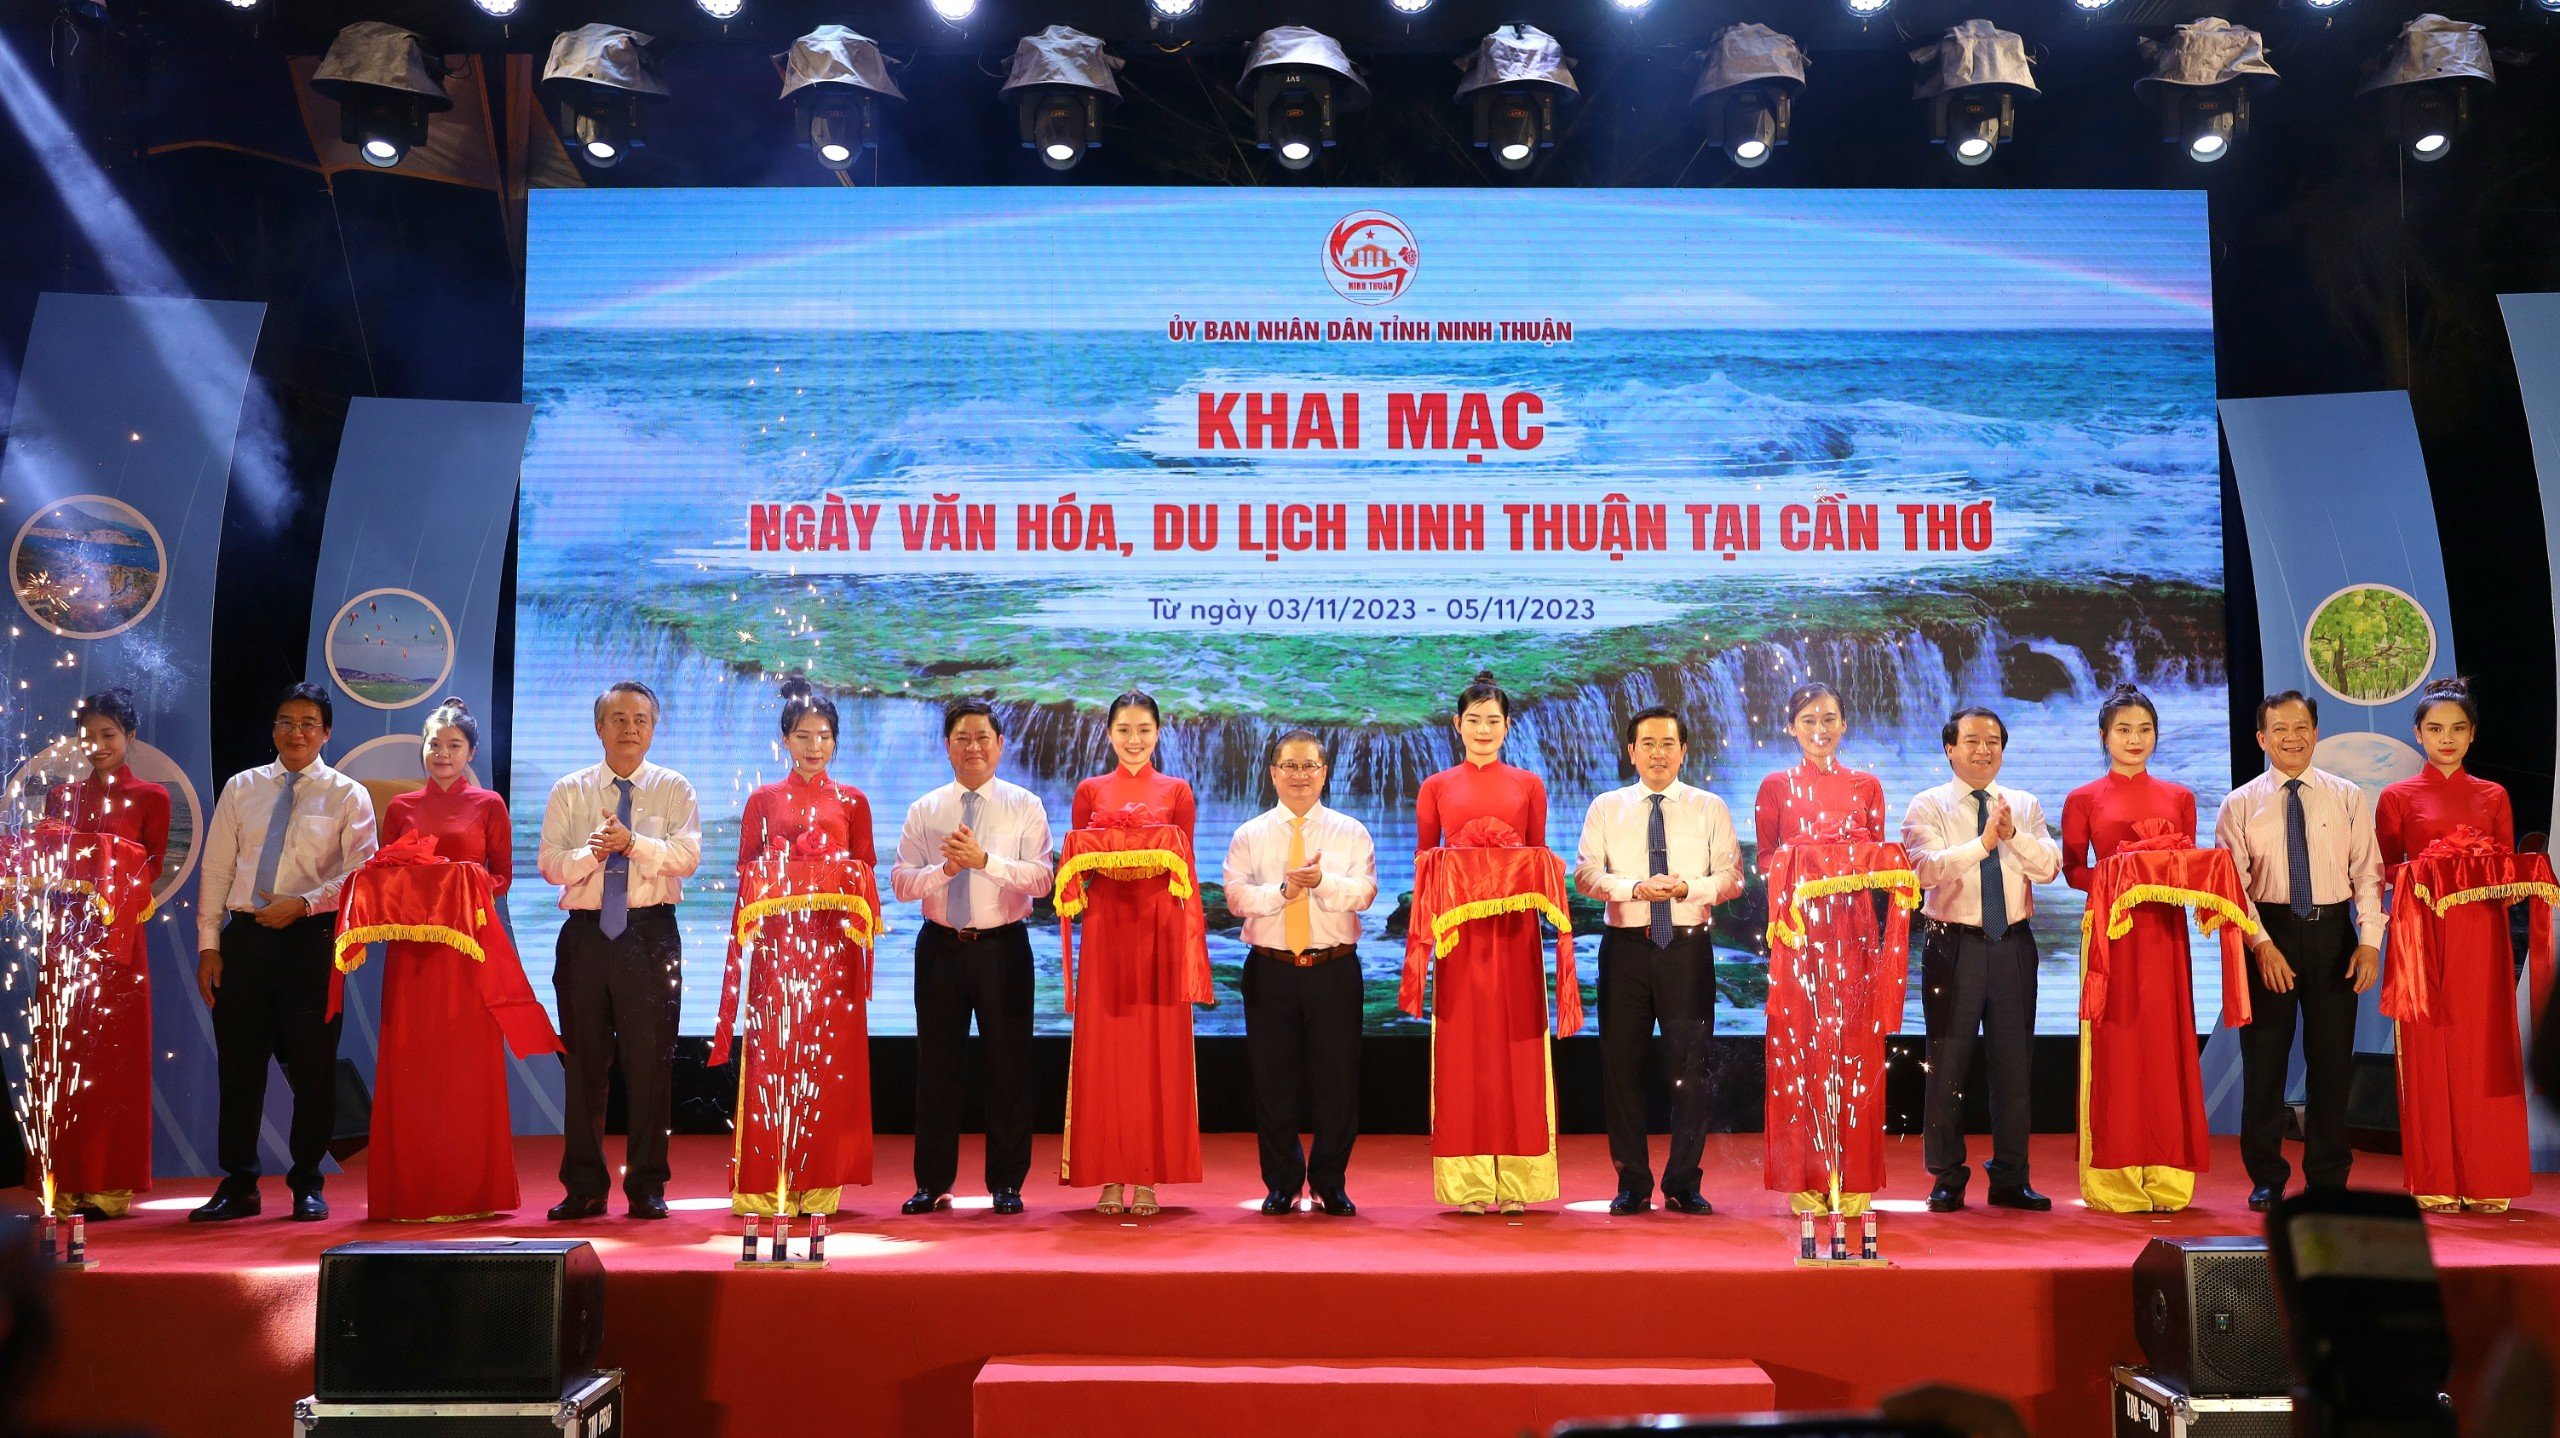 Các đại biểu thực hiện nghi thức cắt băng khai mạc “Ngày Văn hóa, Du lịch Ninh Thuận tại Cần Thơ năm 2023” với chủ đề “Ninh Thuận - Miền đất hội tụ những giá trị khác biệt”.